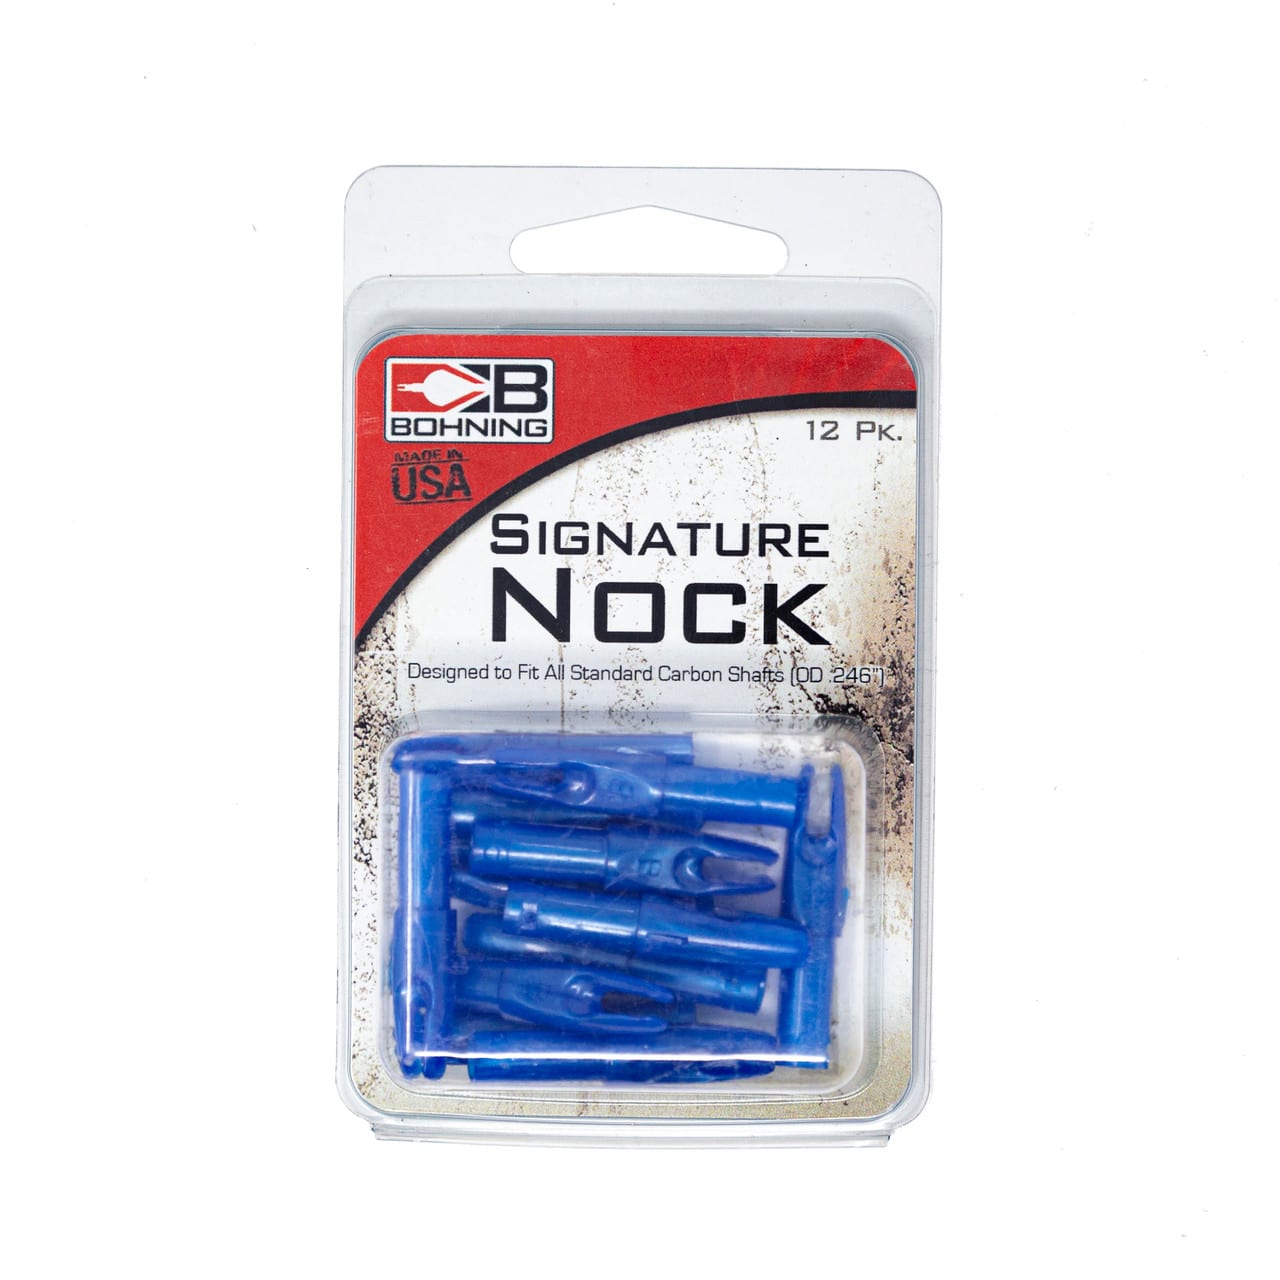 Bohning signature nock in blue in packaging